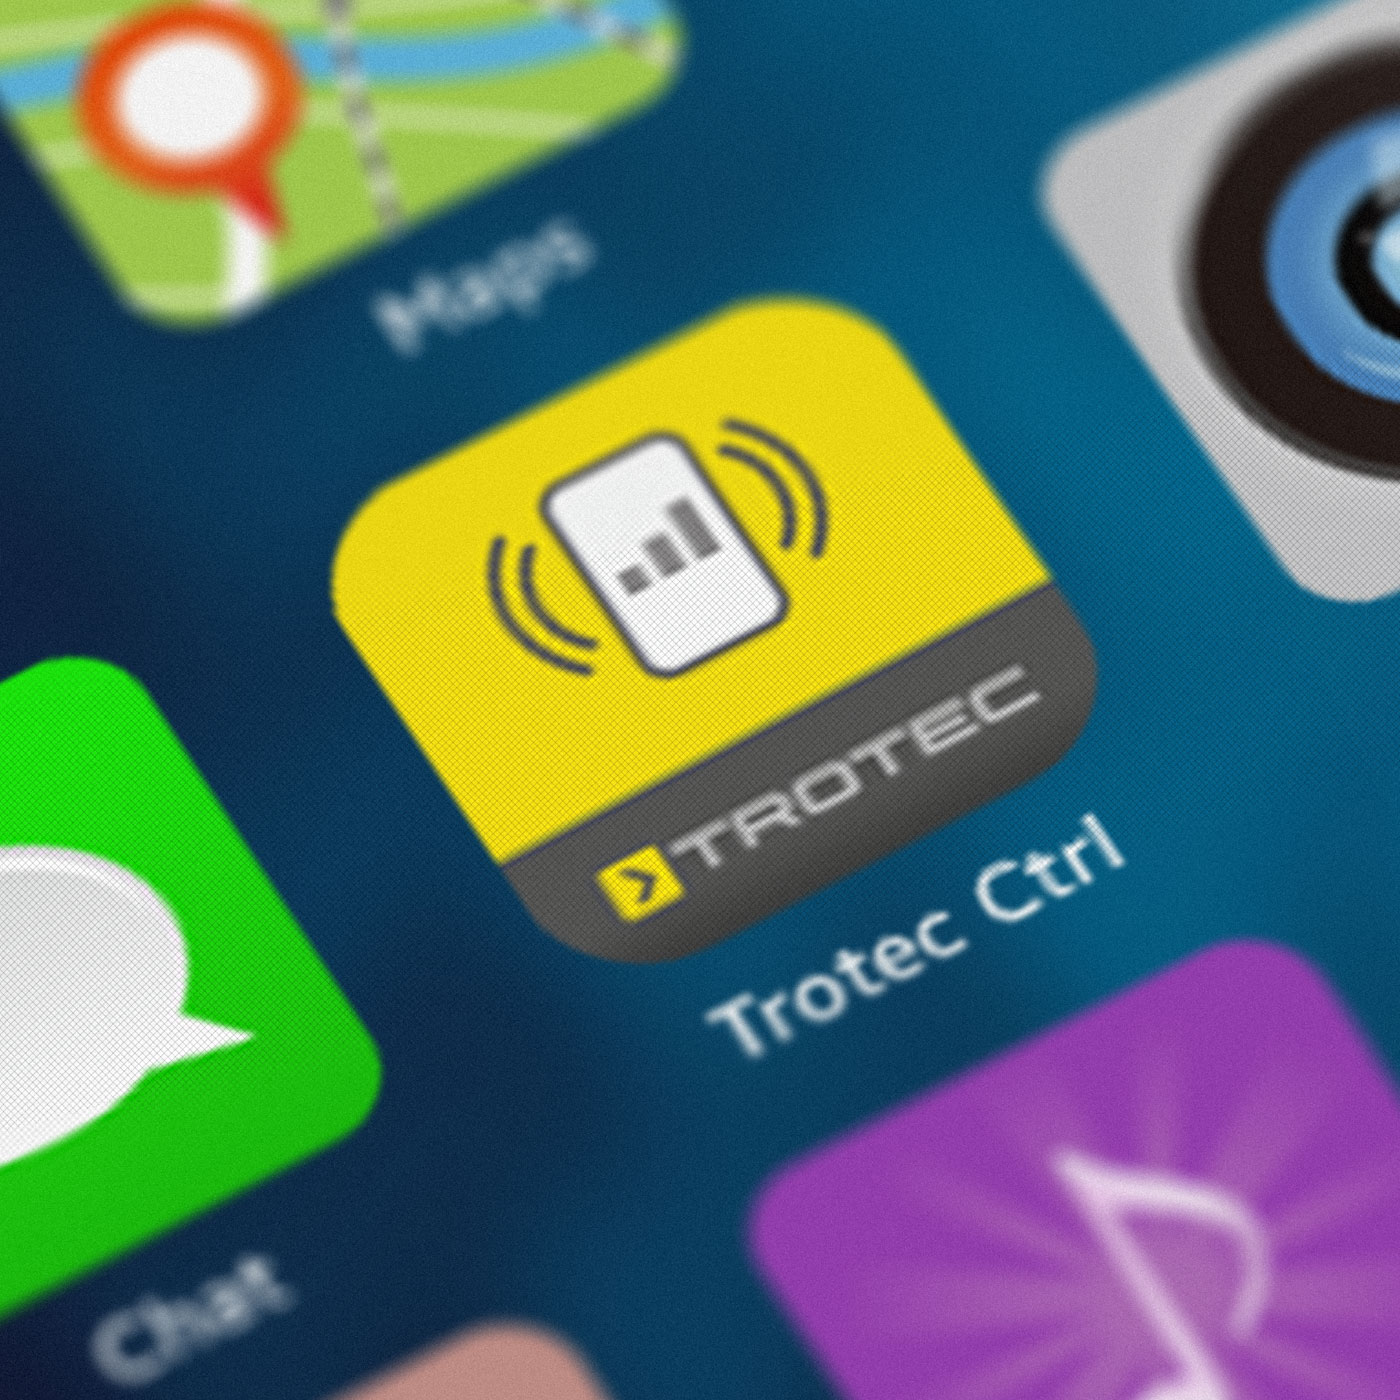 Aplikacija Trotec Control dostupna je besplatno za Android i iOS